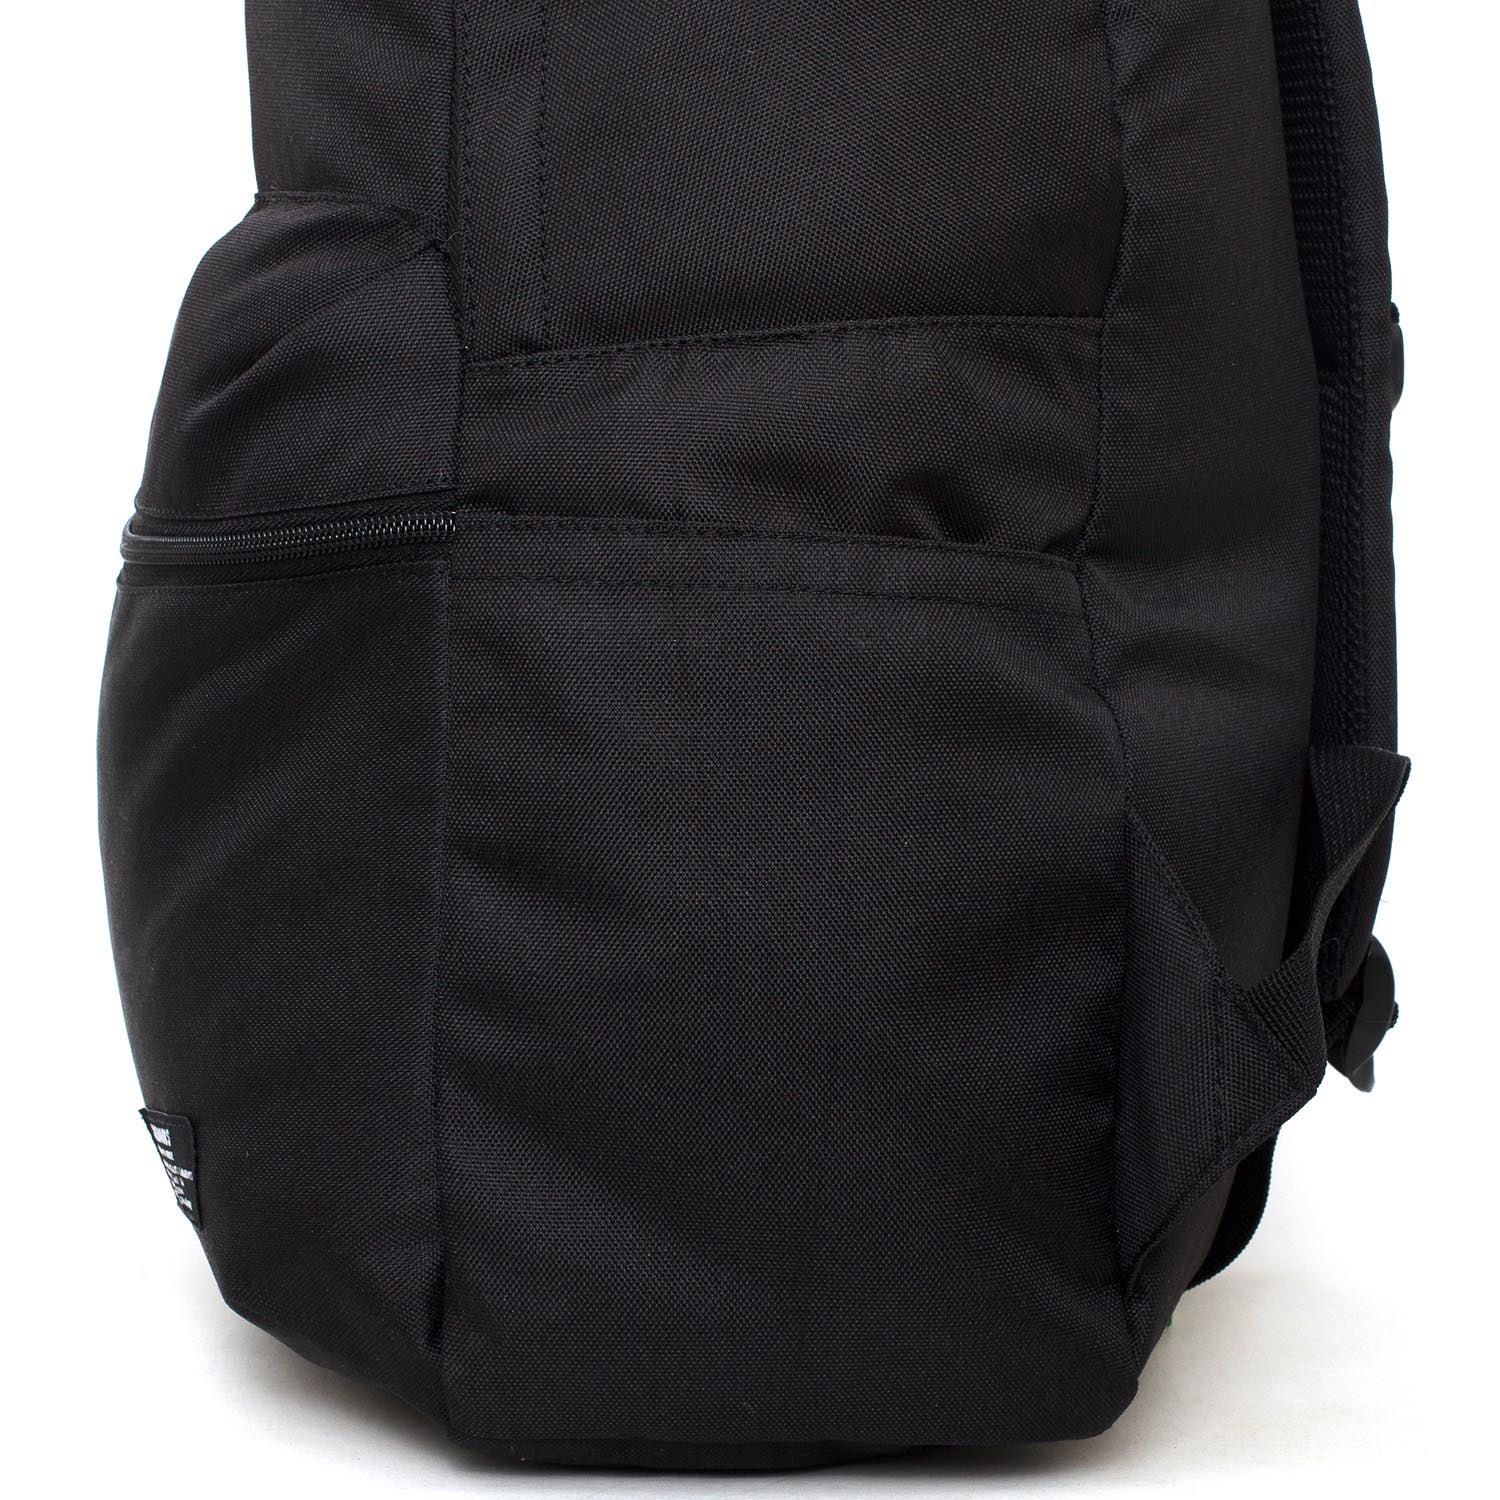 Backpack FRISELL BLACK